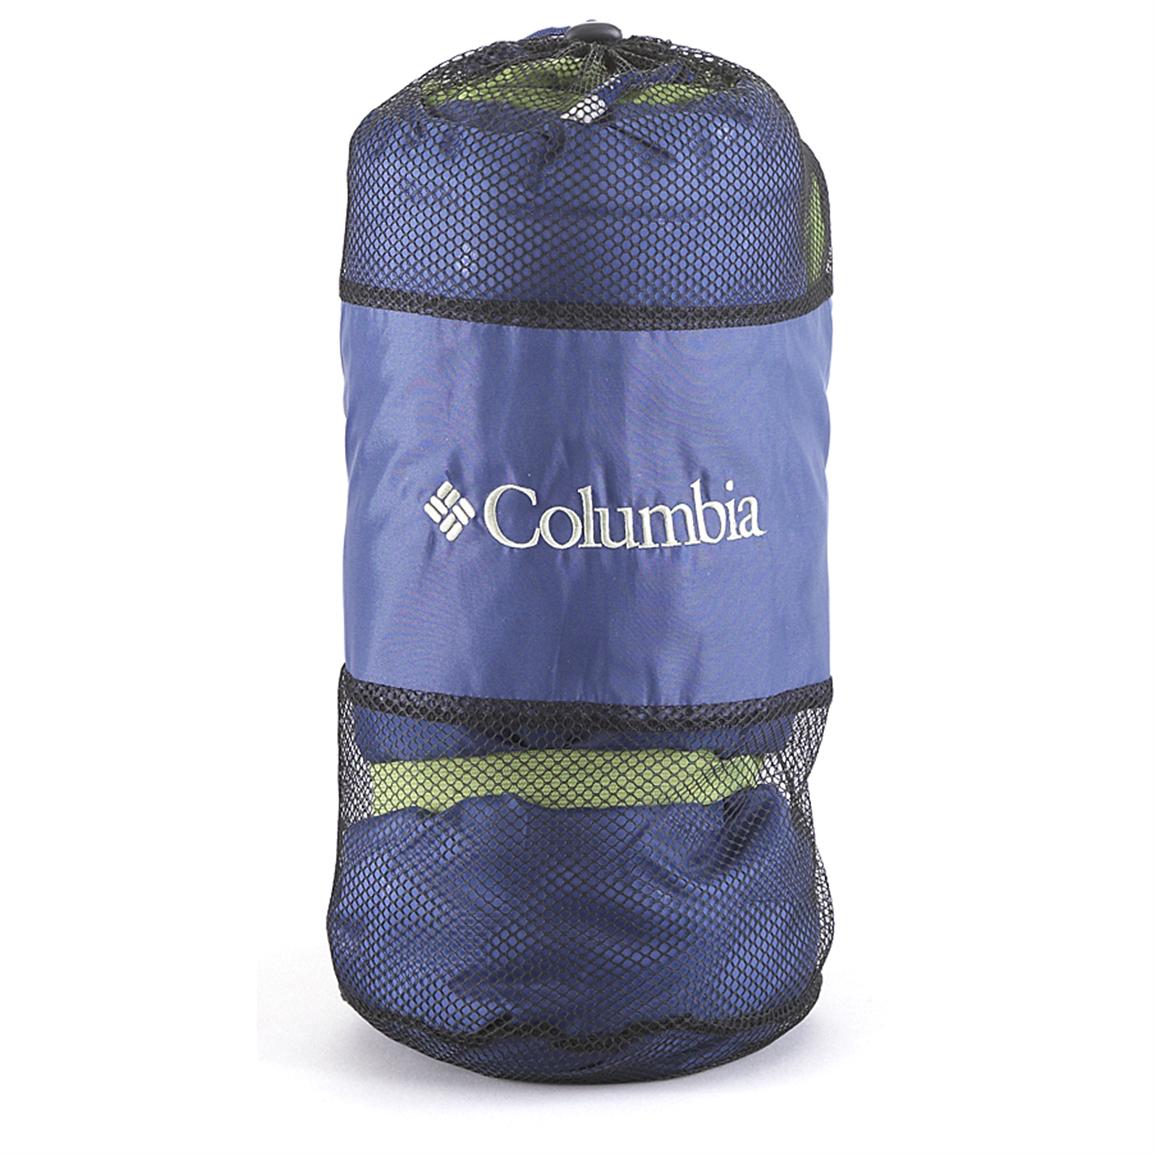 columbia sleeping bag